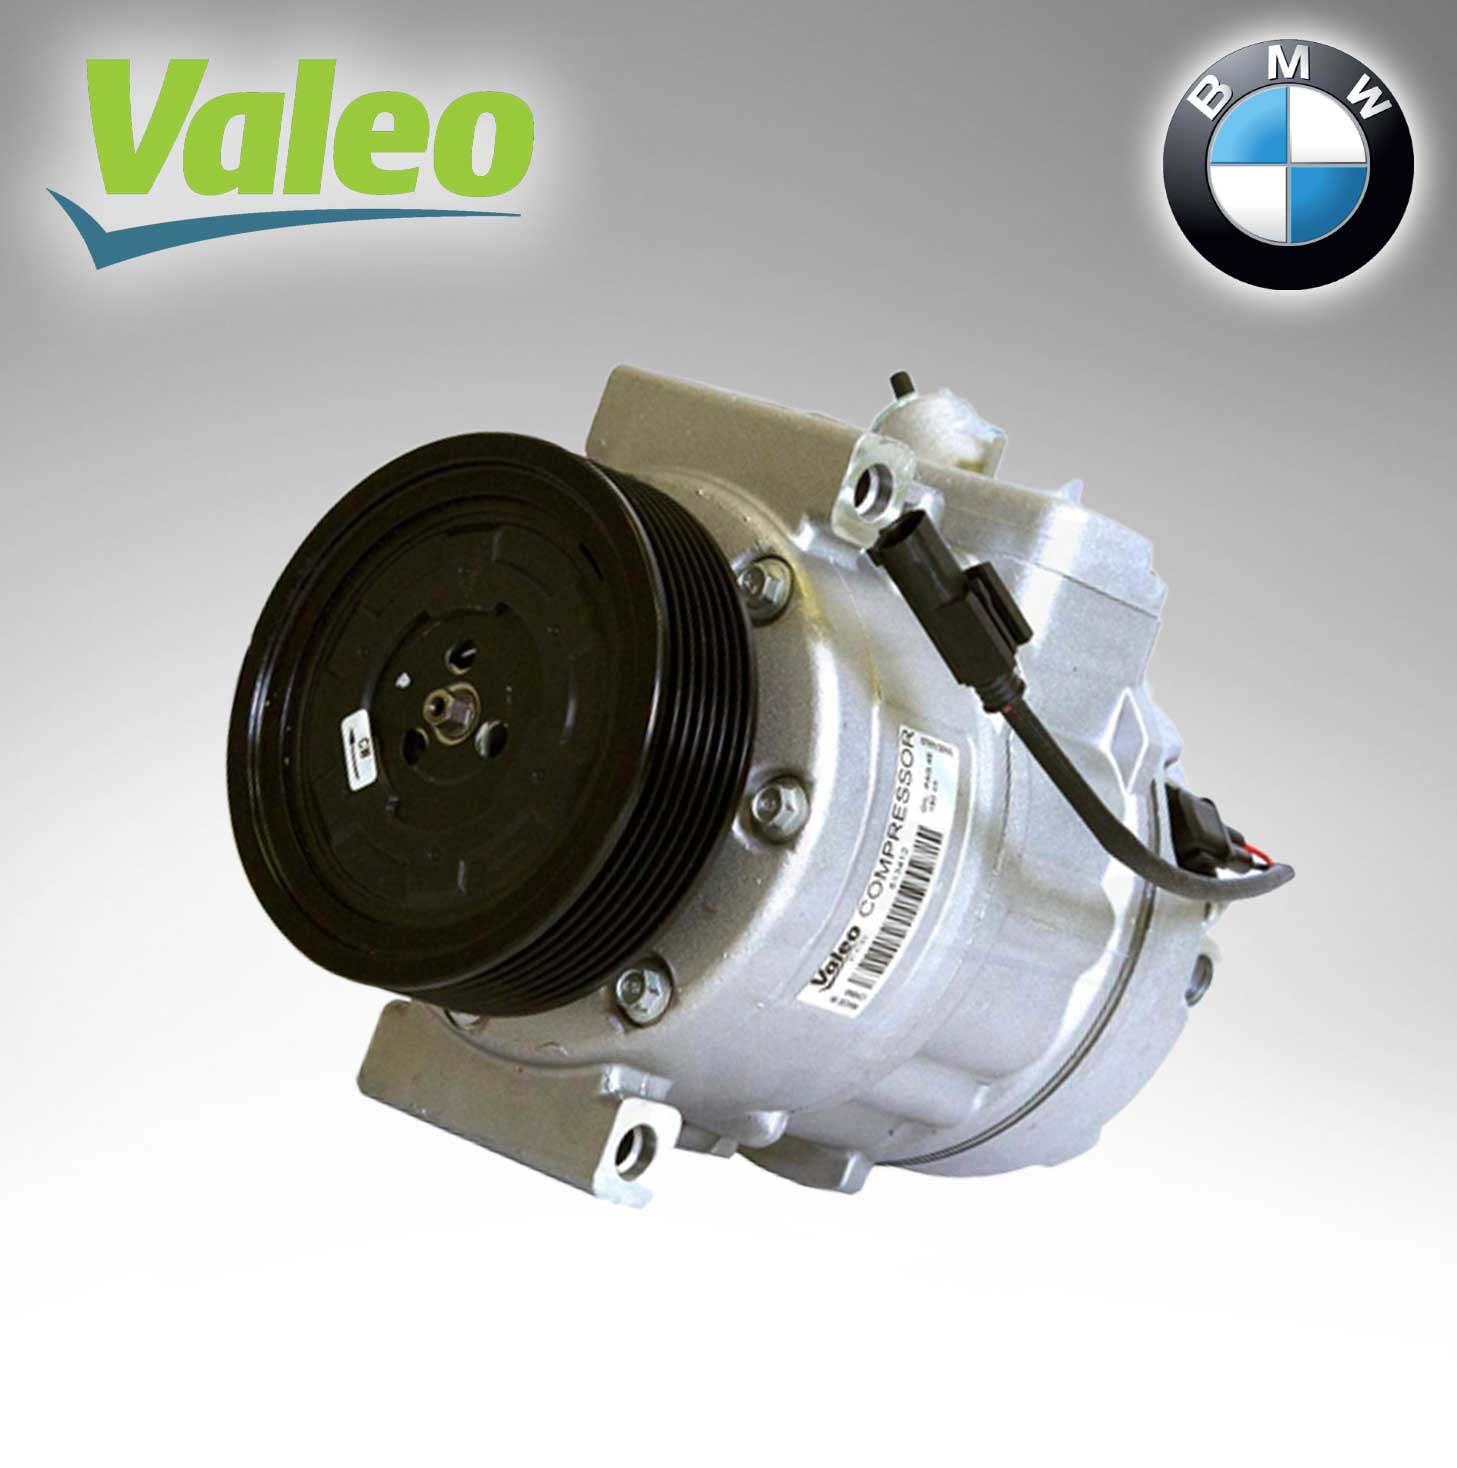 Valeo A/C COMPRESSOR (VAL-813412) For BMW 1/3 SERIES (E90) &Z4 64526956719